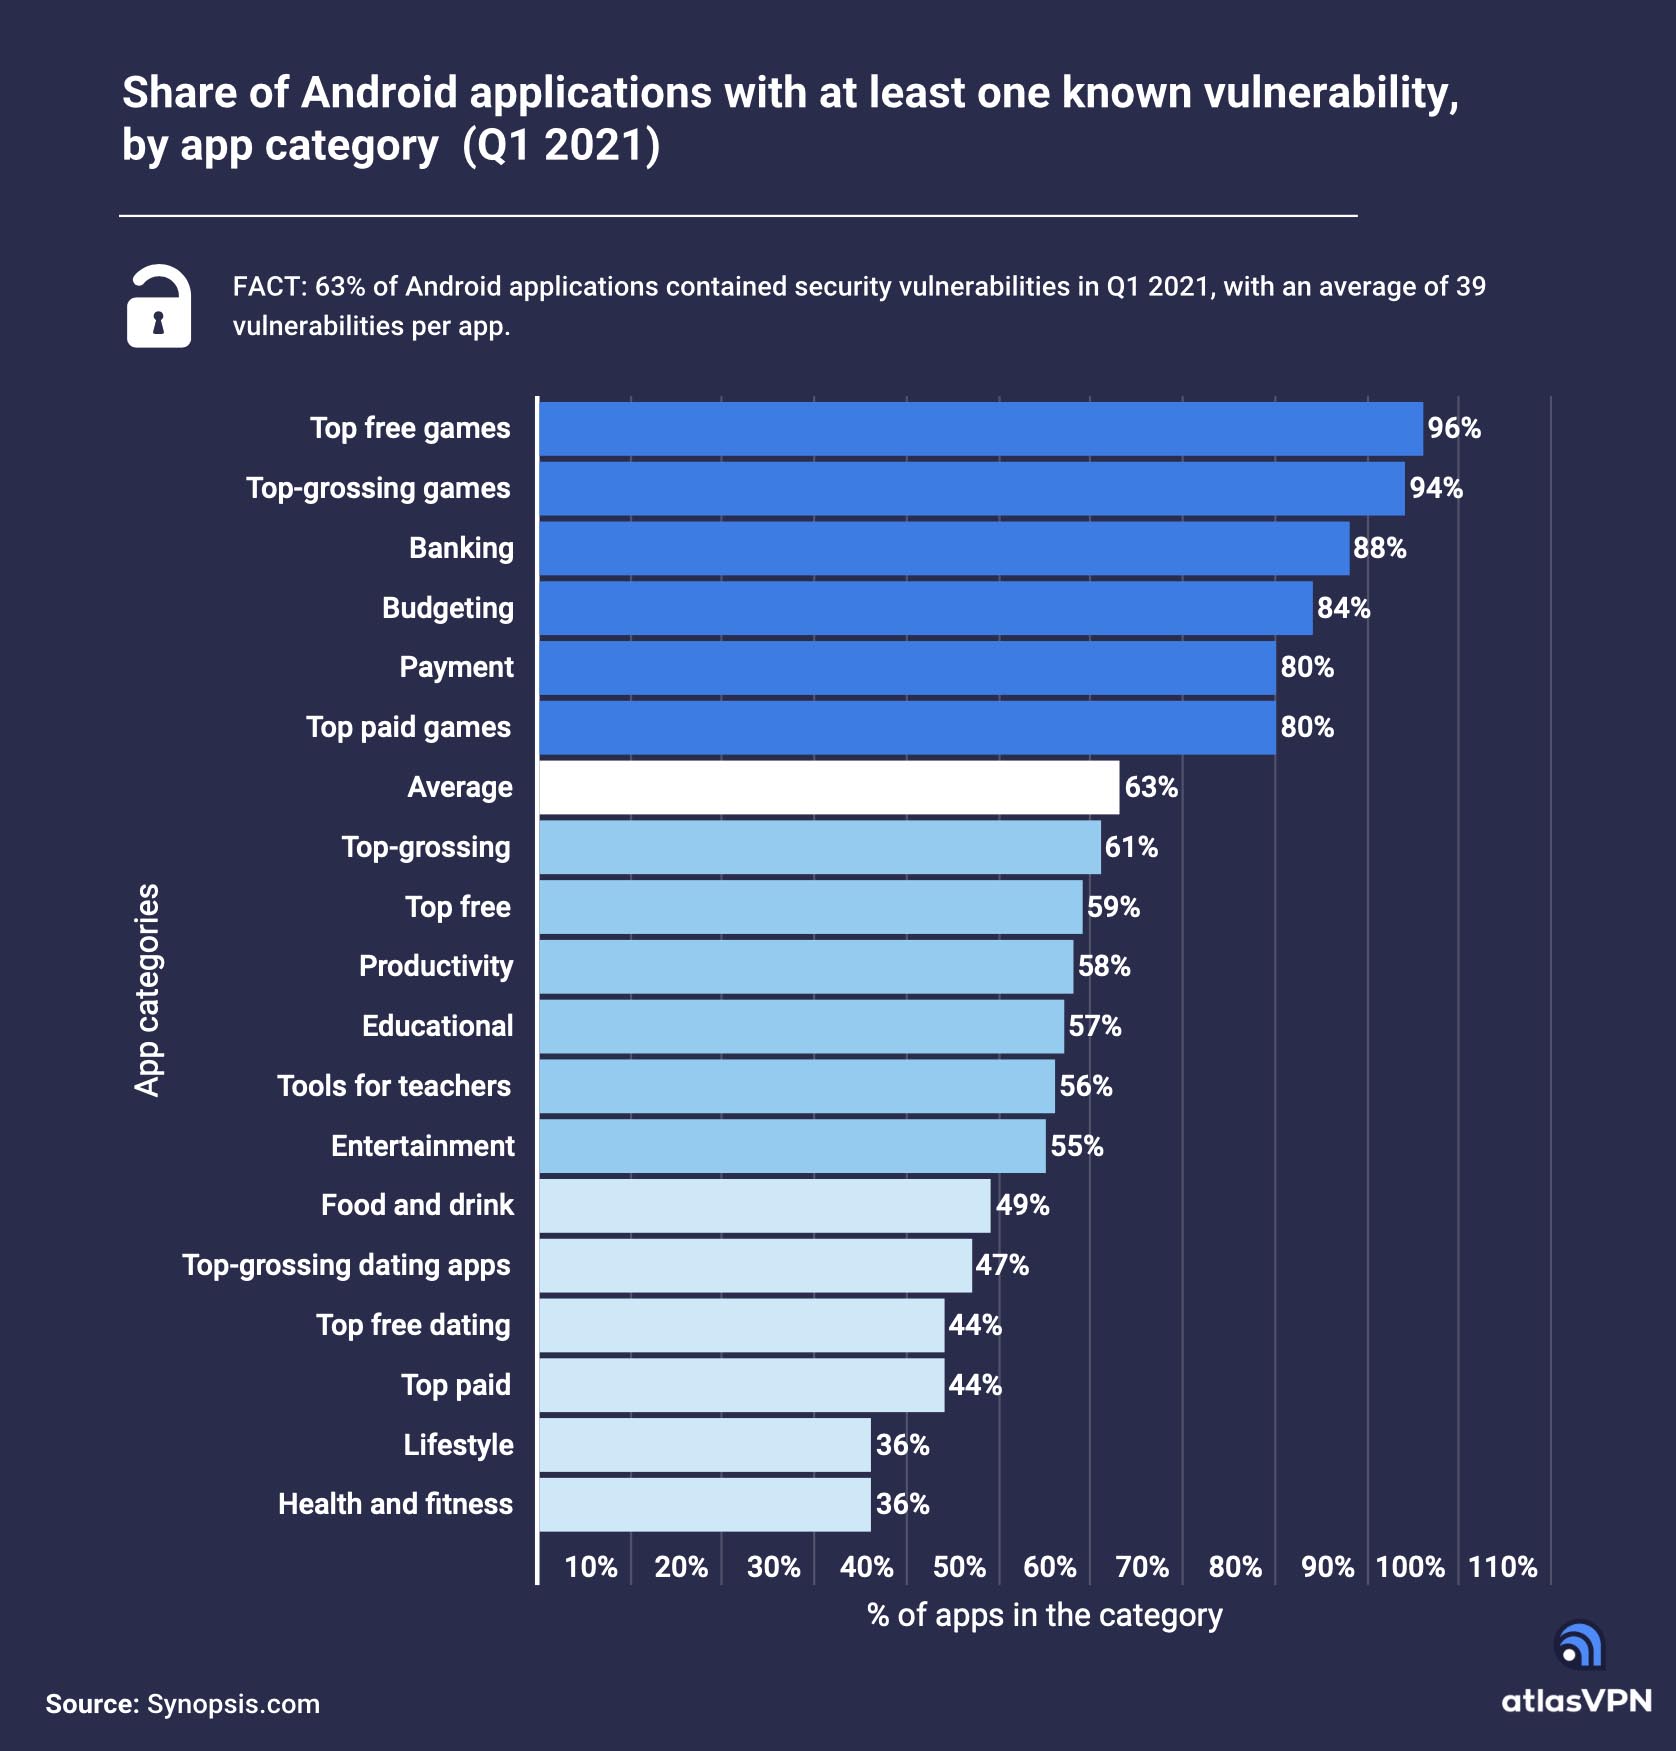 Le app Android hanno una media di 39 vulnerabilità